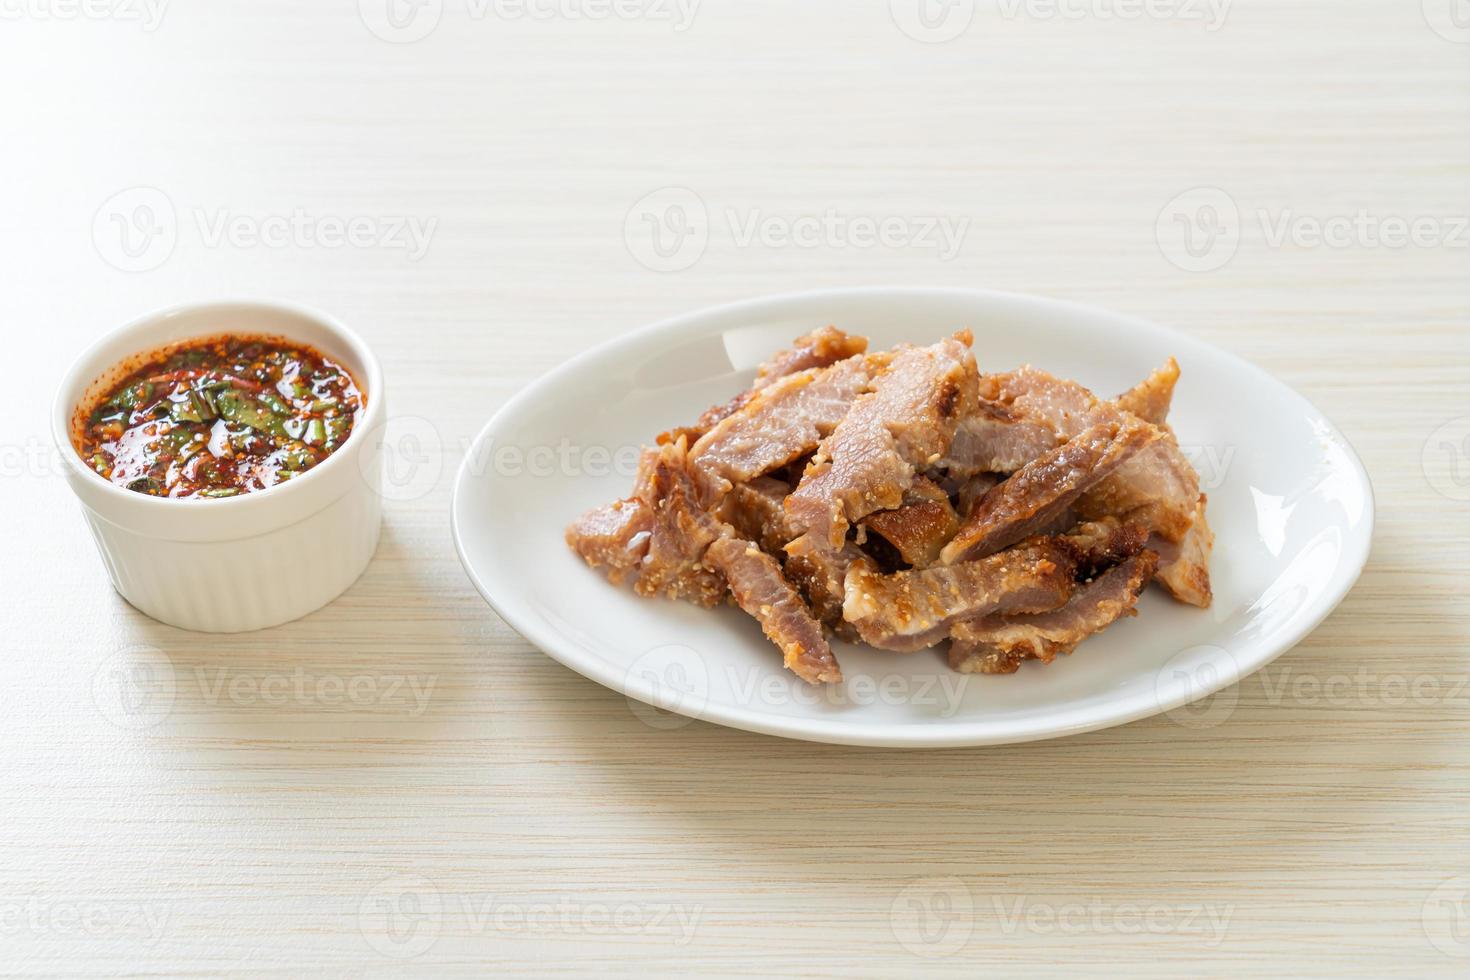 grillad fläskhals med thailändsk kryddig sås foto